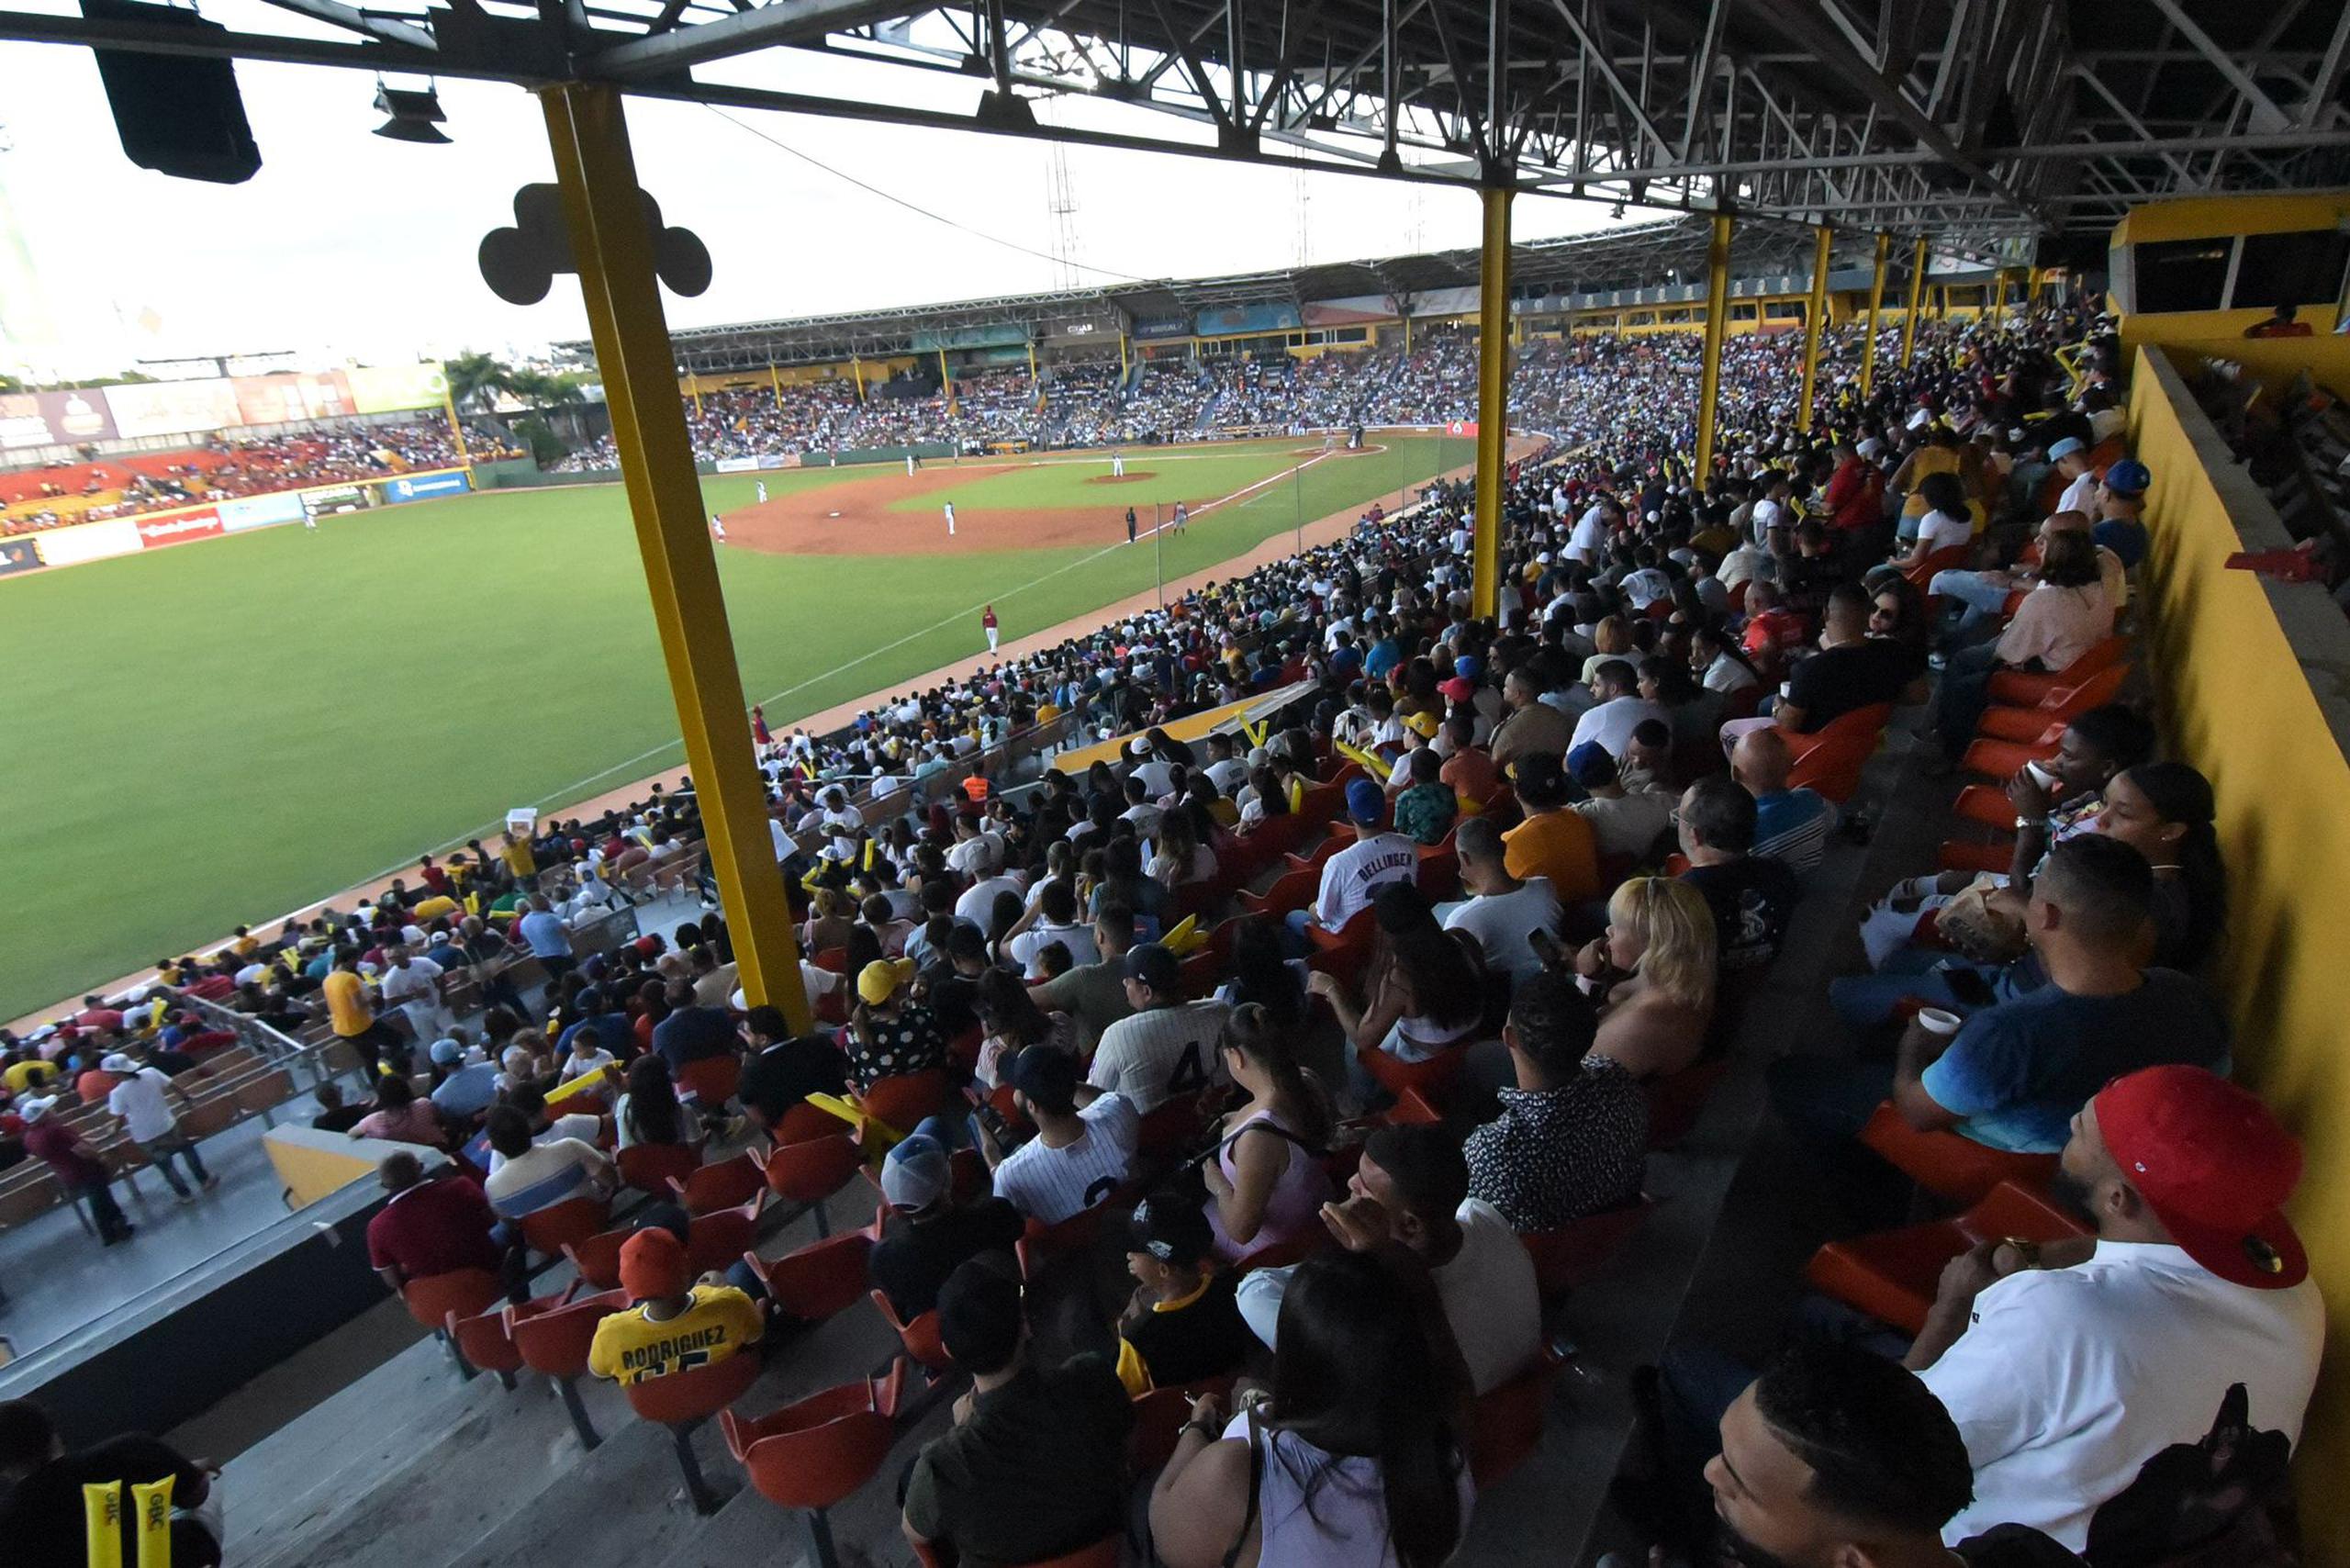 El Estadio Cibao recibió a sobre 12,000 fanáticos para el partido de Estrellas entre República Dominicana y Puerto Rico.